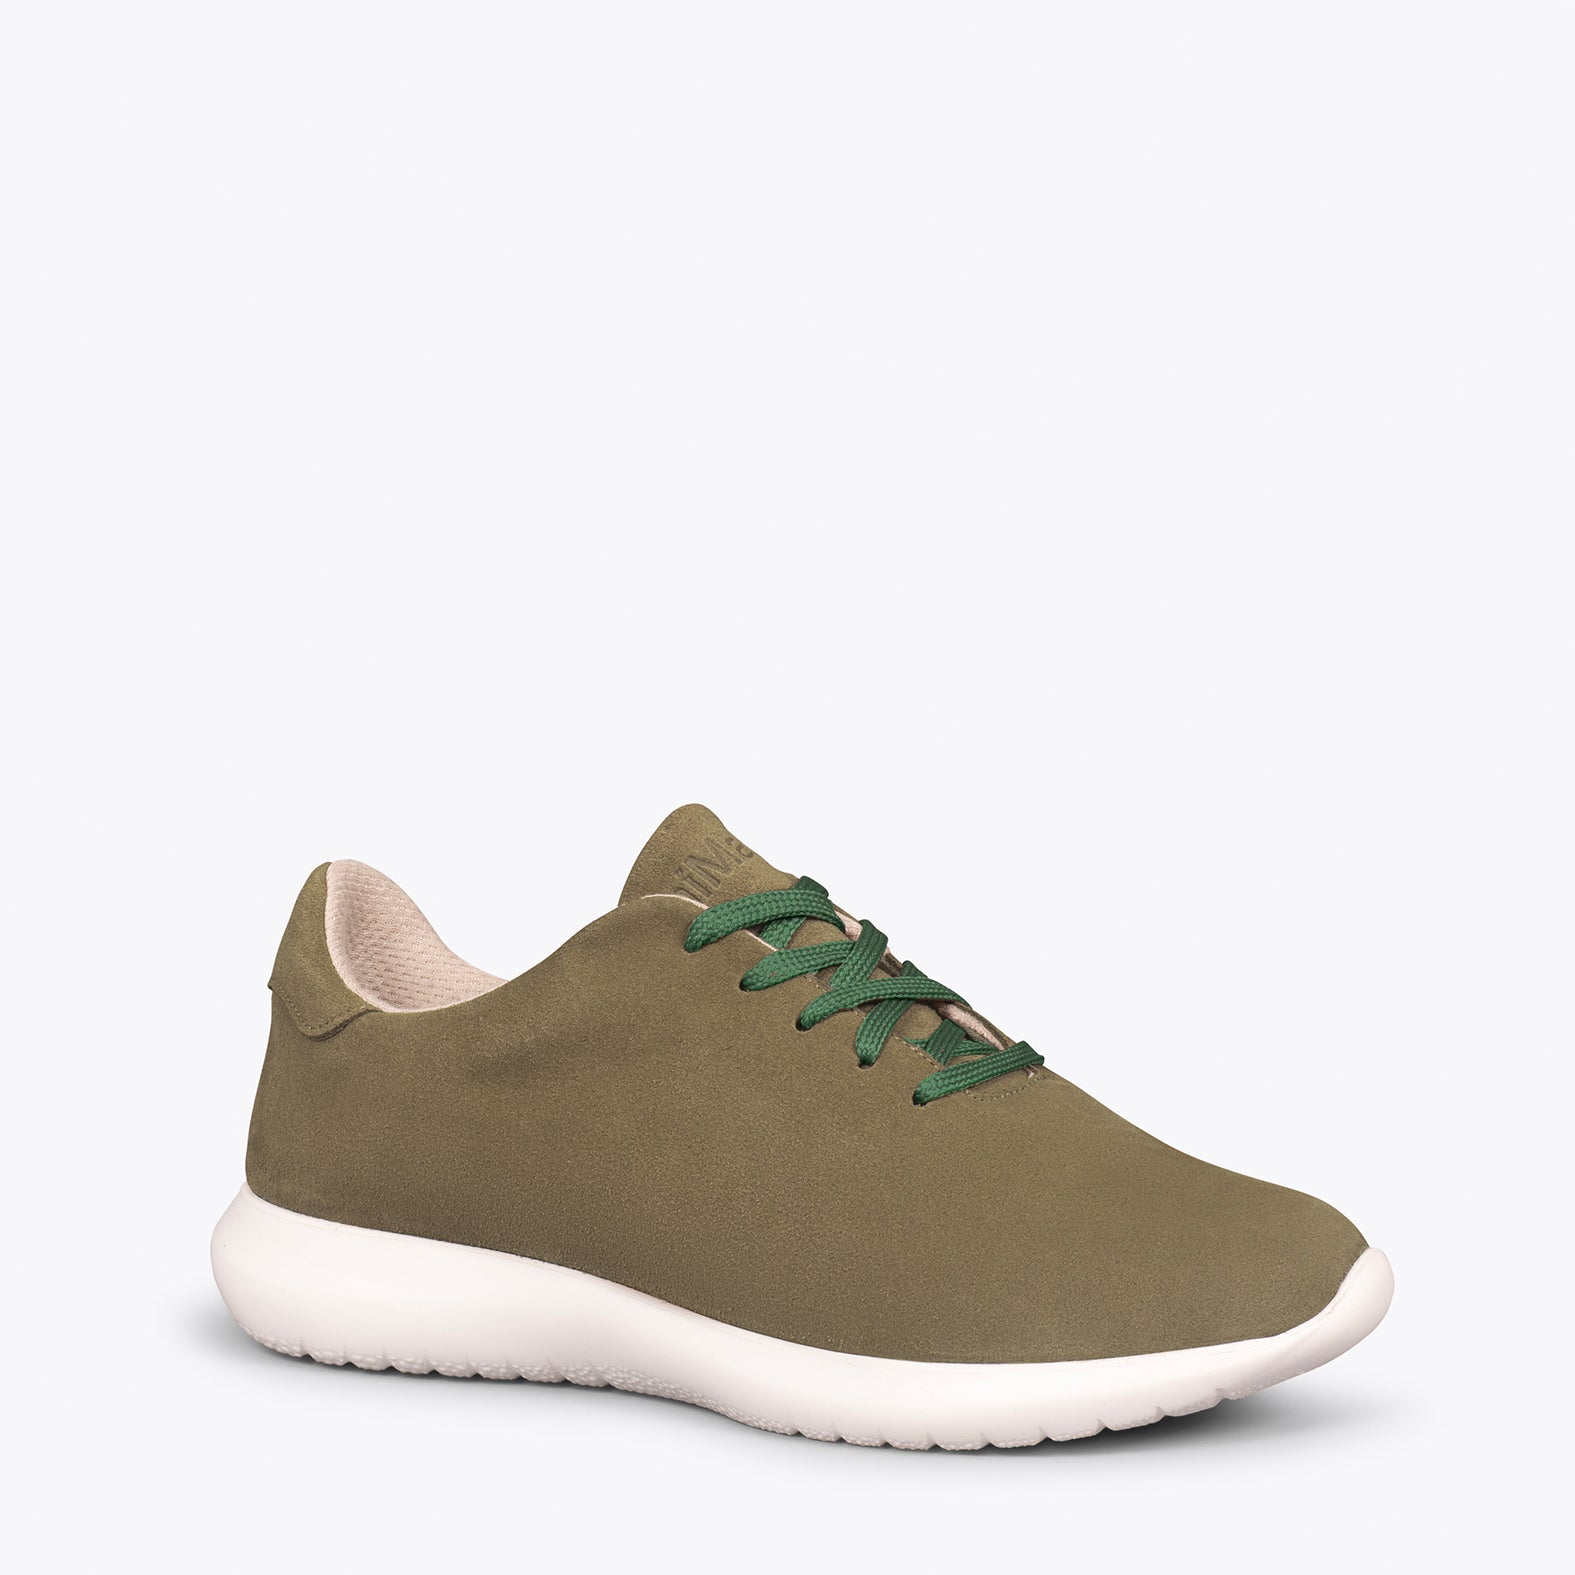 WALK – GREEN comfortable women’s sneakers